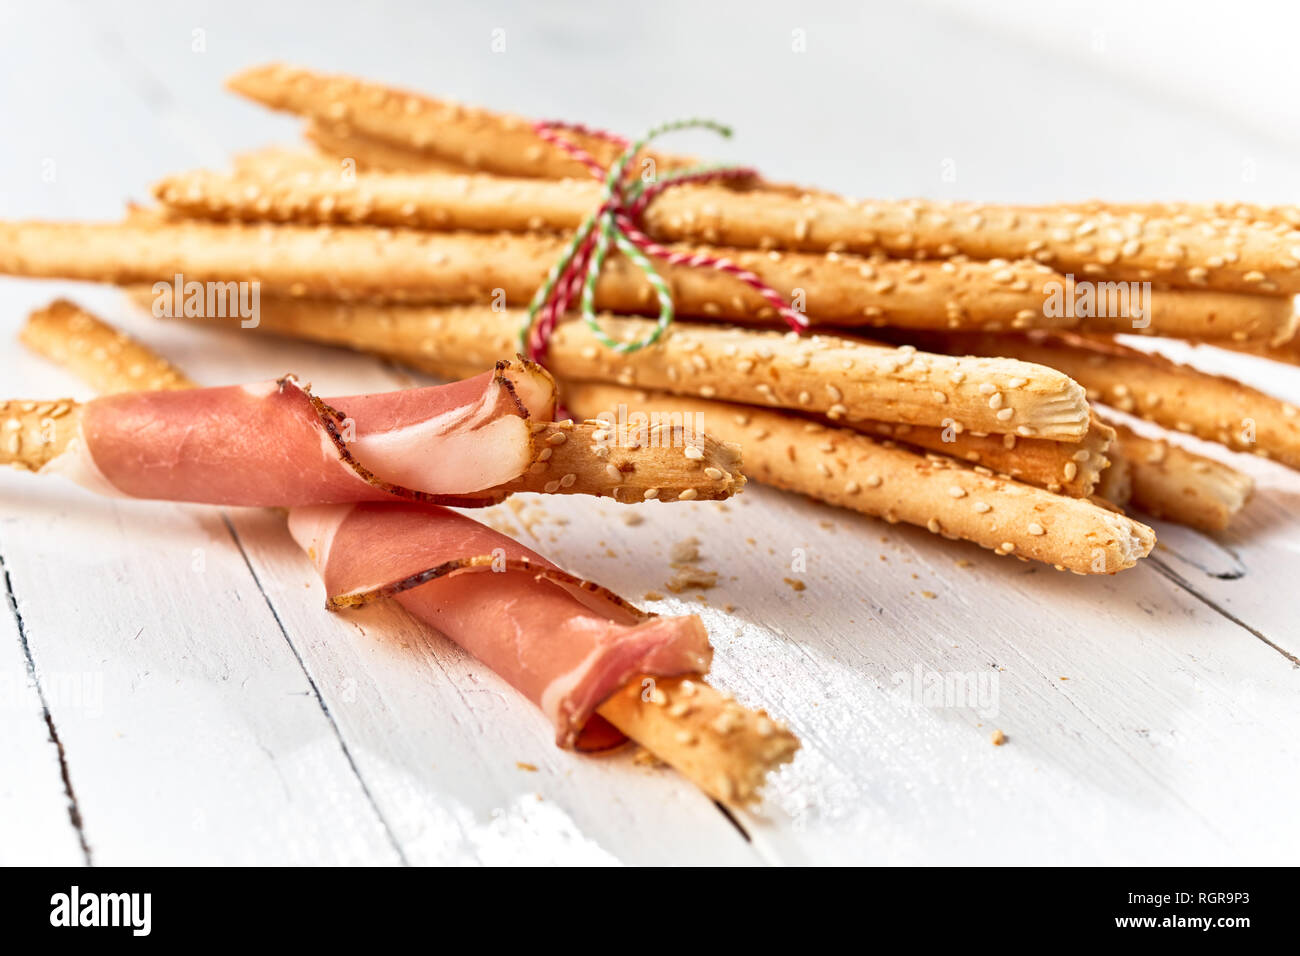 Frisch gebackene italienische grissini Brot Sticks in Schinken auf einem high key Holz Hintergrund gewickelt. Stockfoto